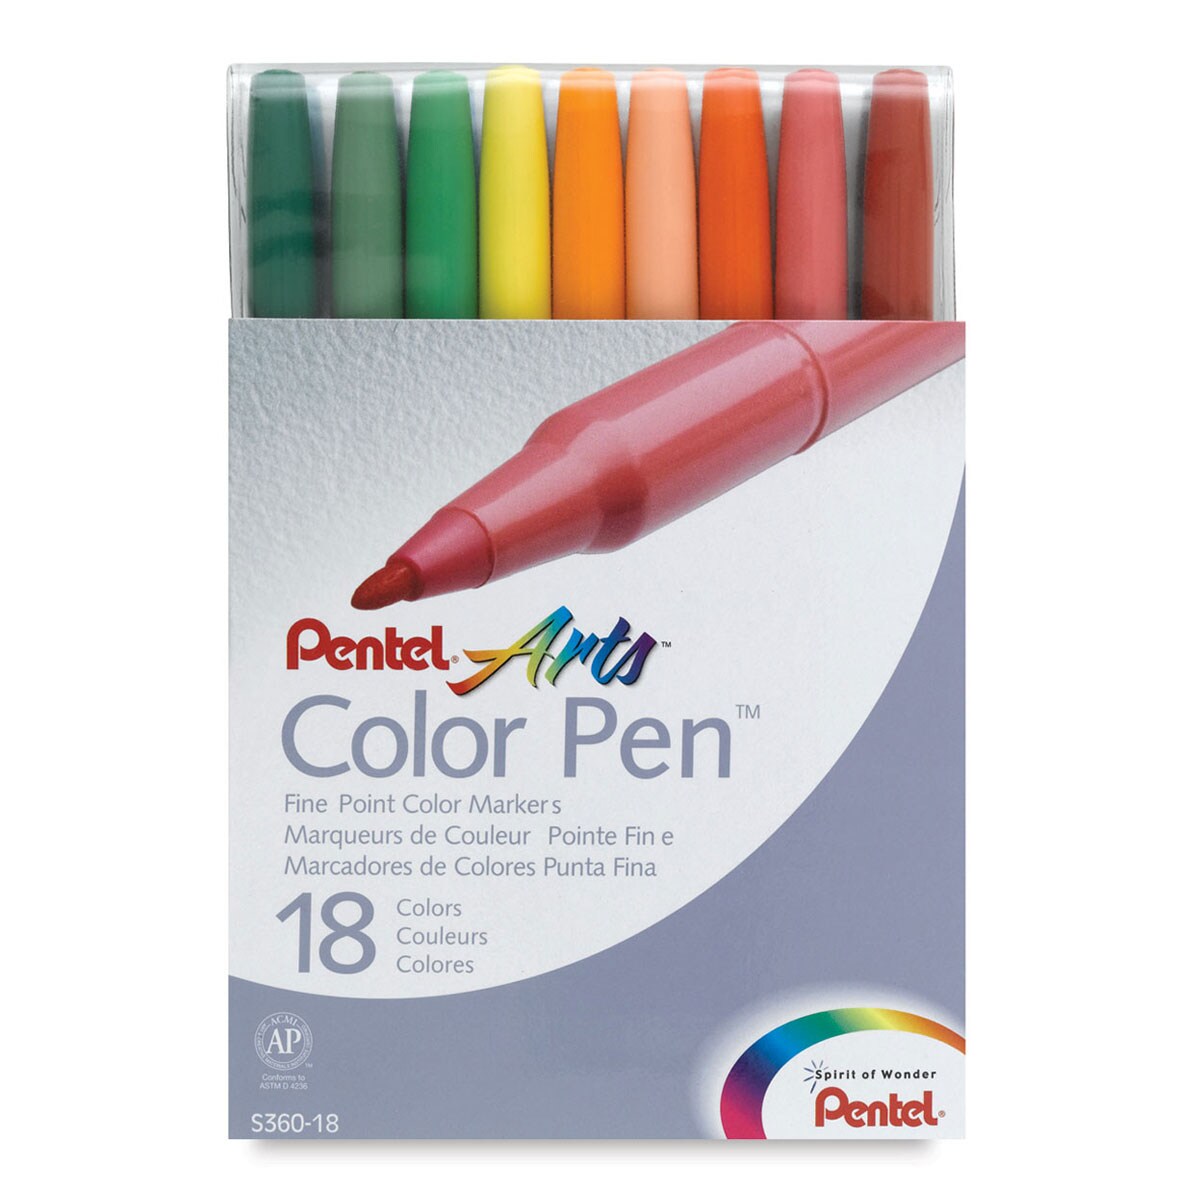 Pentel Color Pen Set - Assorted Colors, Set of 18